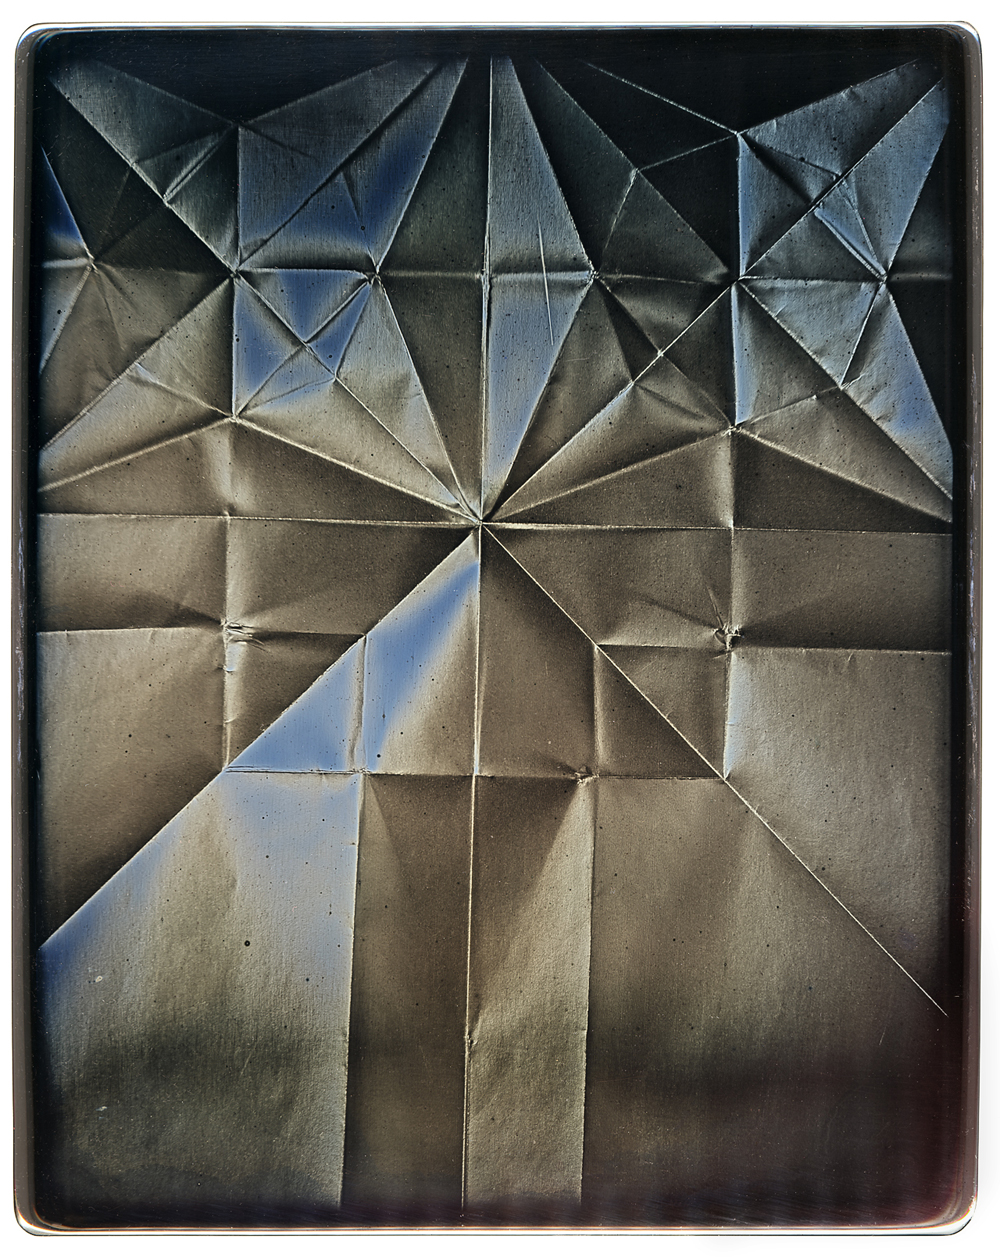 Eirik Johnson / Daniel Carrillo, Albatross, 2018, daguerreotype, 10 x 8 inches, $5000.